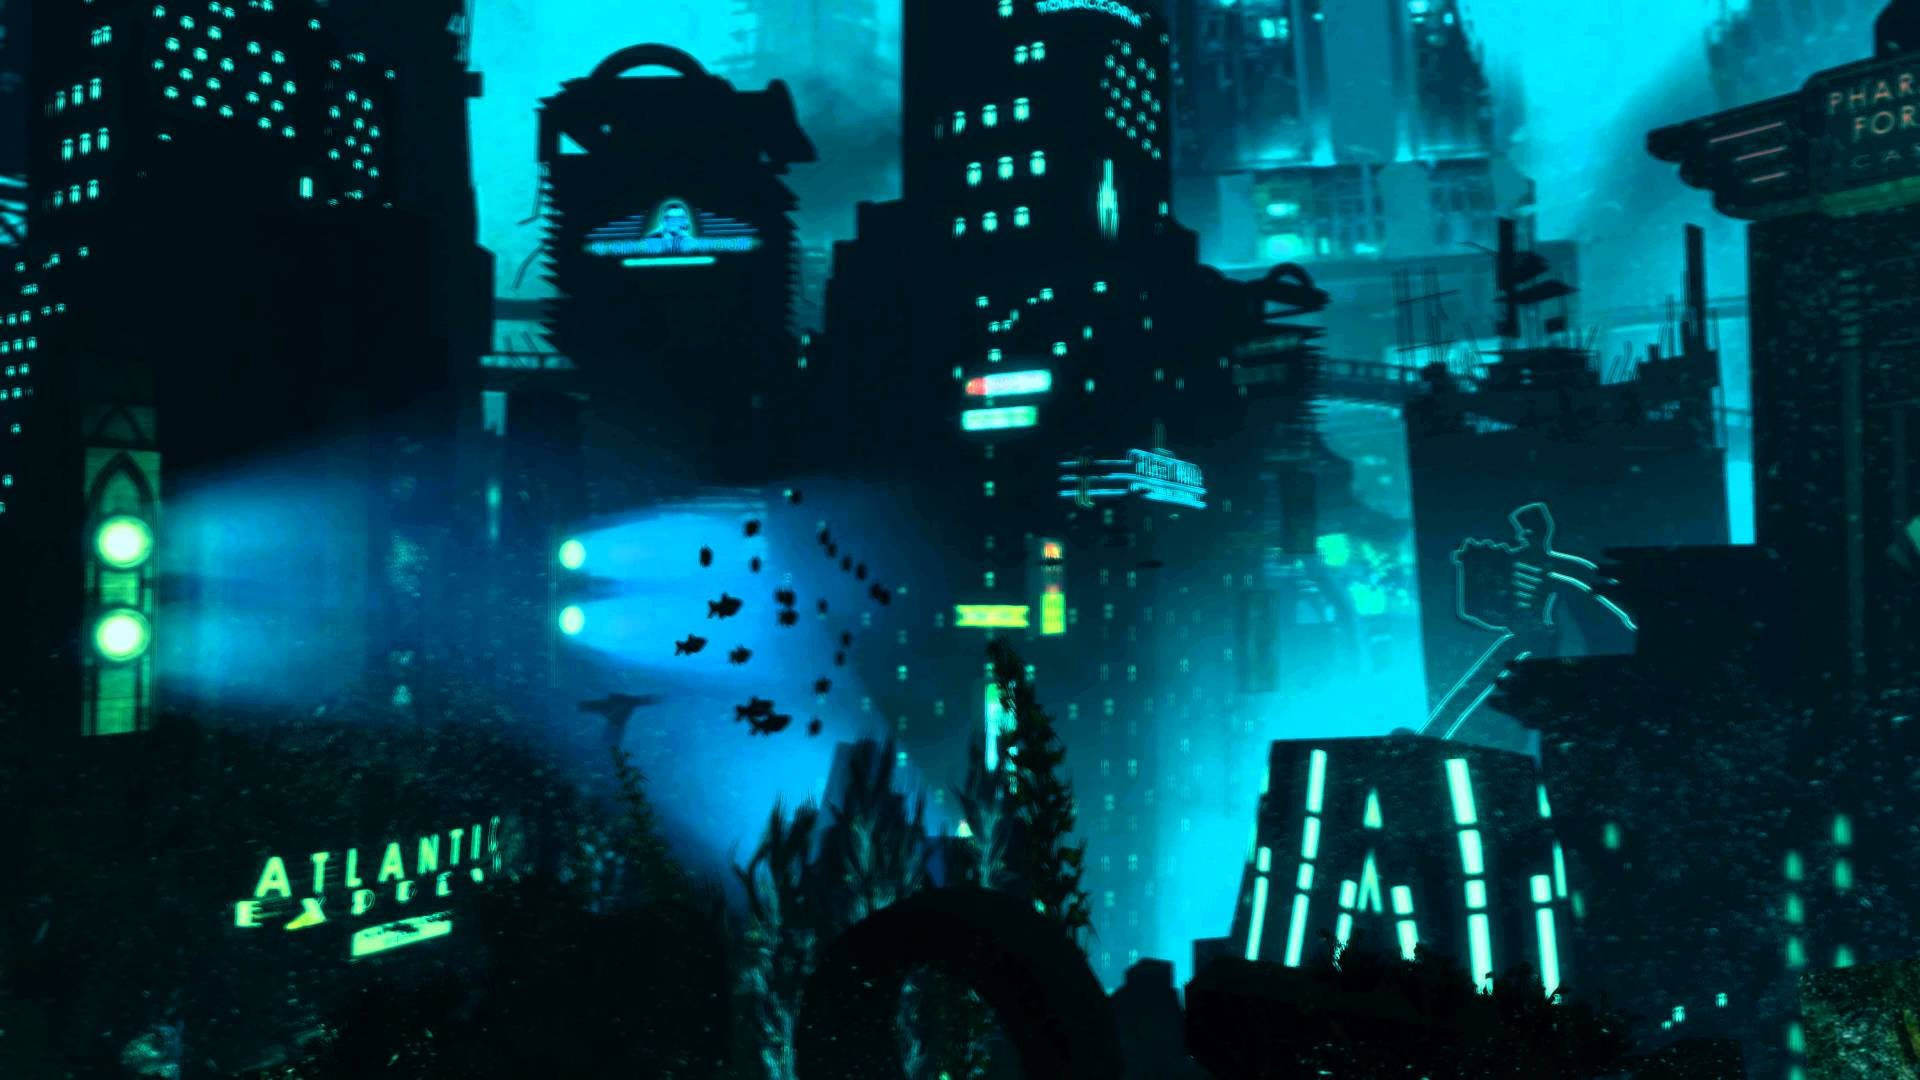 Download Bioshock 4k Rapture Underwater Wallpaper 